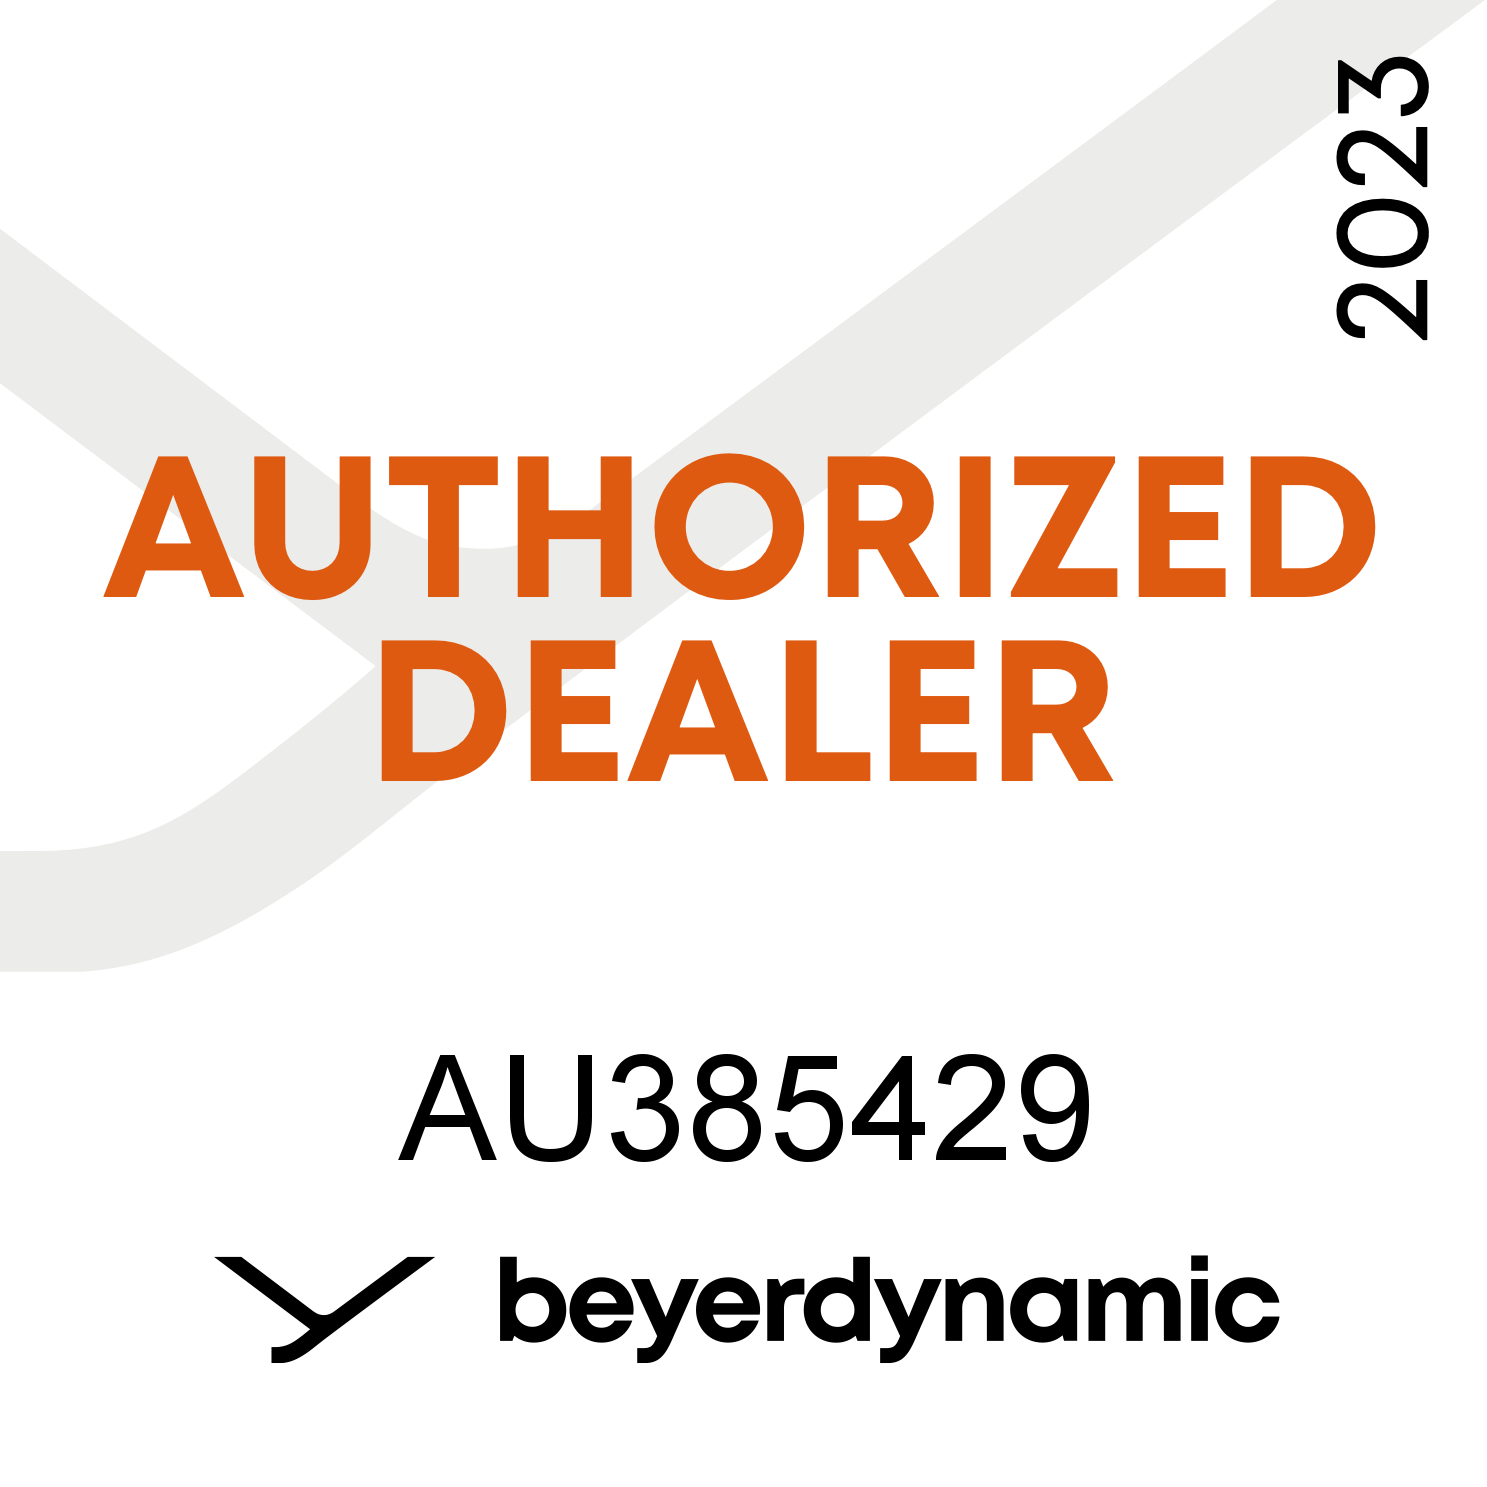 Authorized Dealer of Beyerdynamic